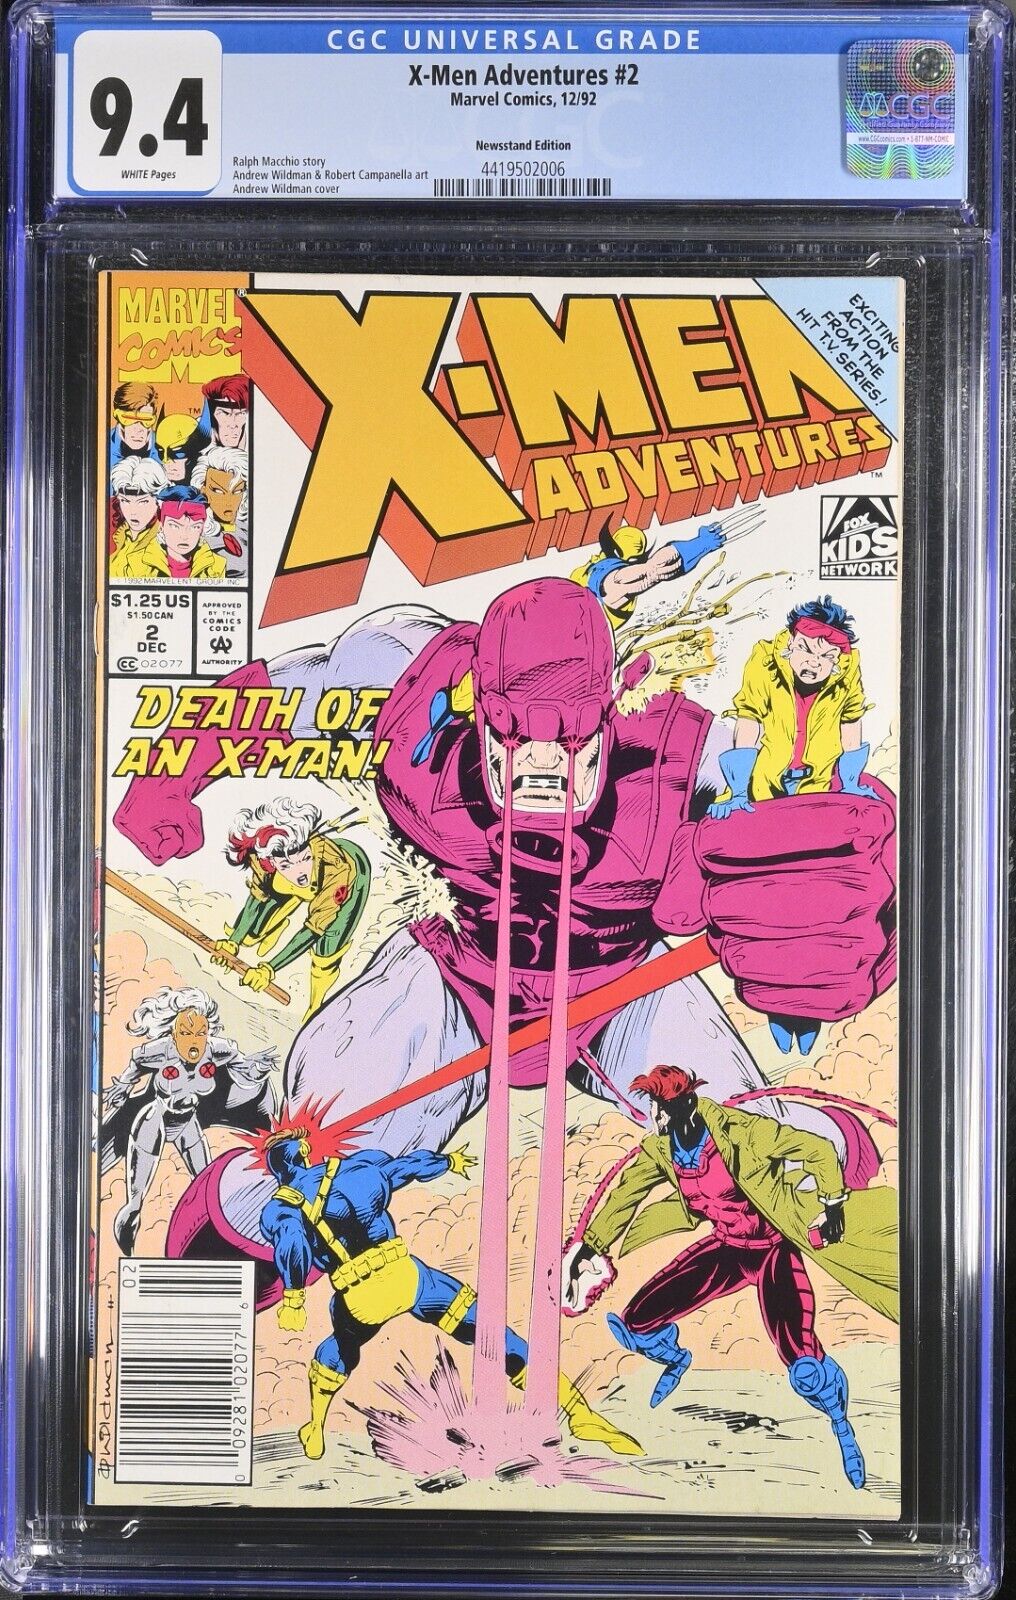 X-Men Adventures #2 Newsstand Edition CGC 9.4